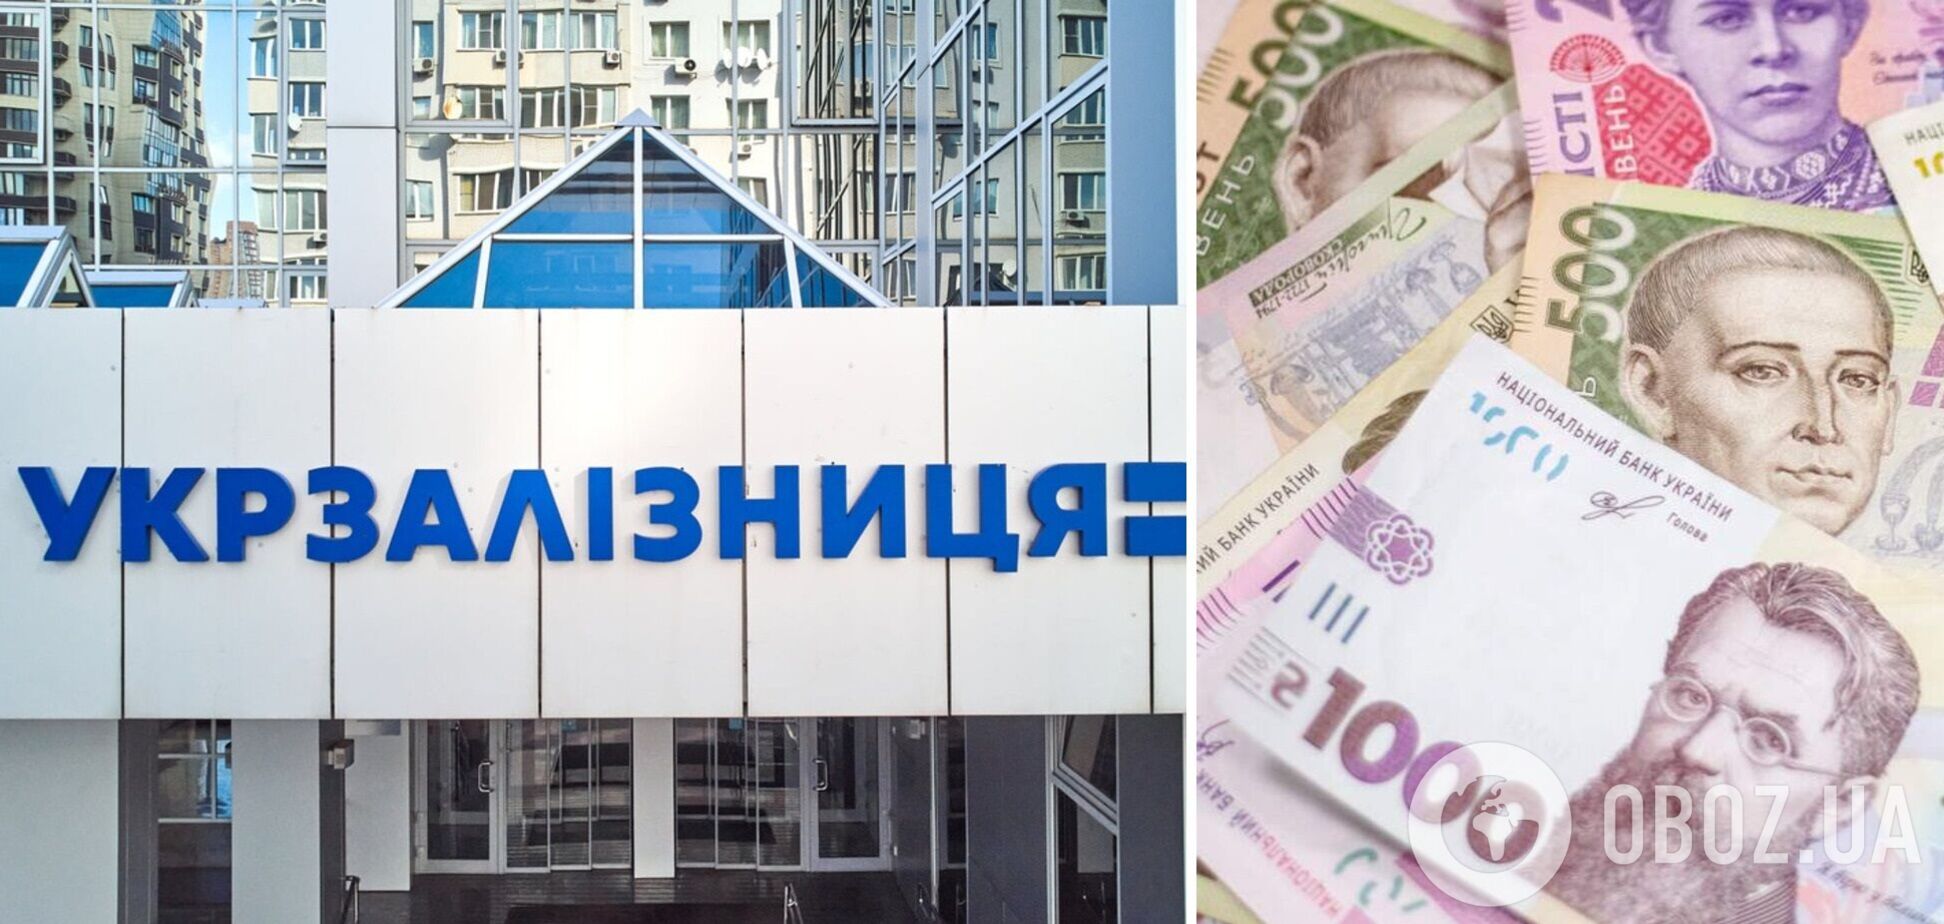 Должностные лица 'Укрзалізниці' разворовали 12 млн грн компании